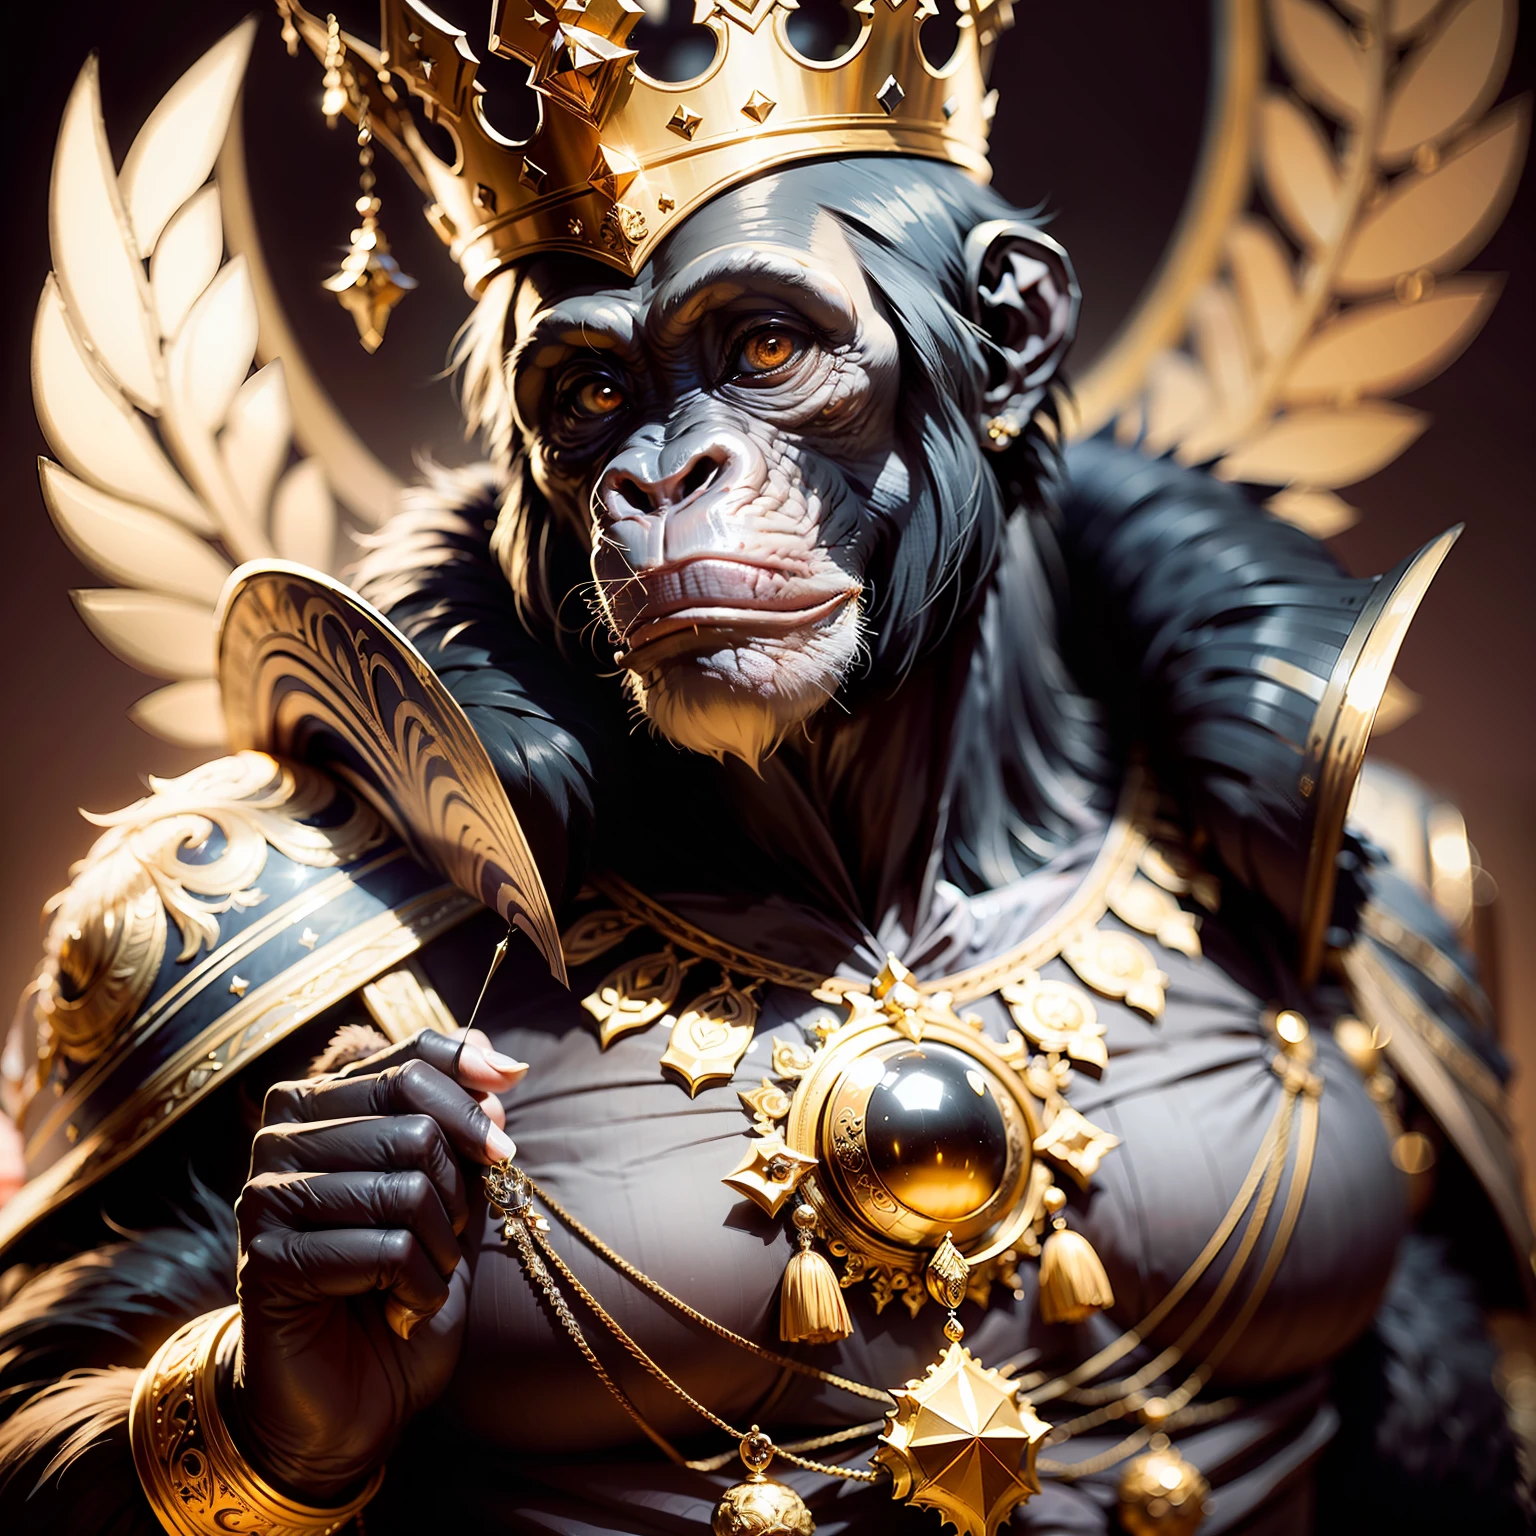 Rey chimpancé,,((elegant)),, soberano, espiritual, seguro, con corona y puntales muy detallados, Fondo negro, Frente a la cámara,, obra maestra,,((obra maestra))